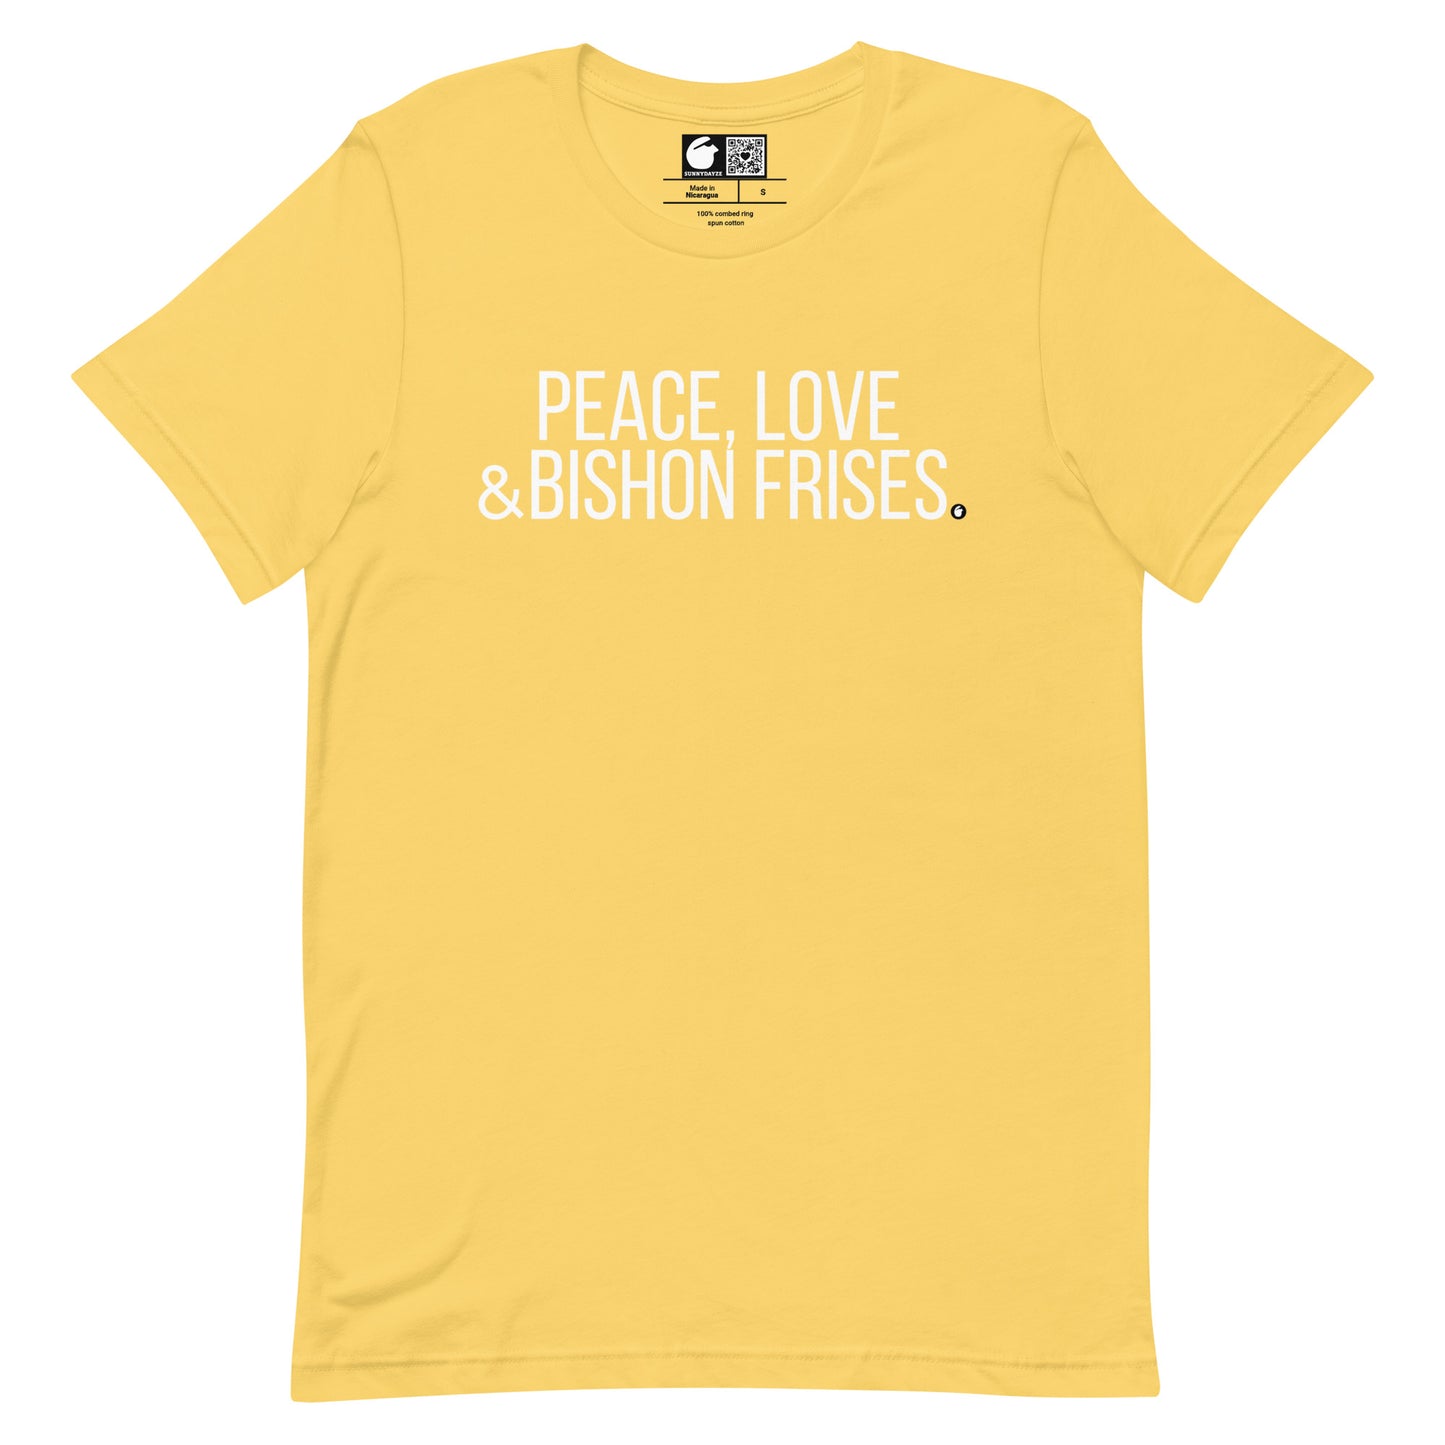 BISHON FRISES Short-Sleeve Unisex t-shirt